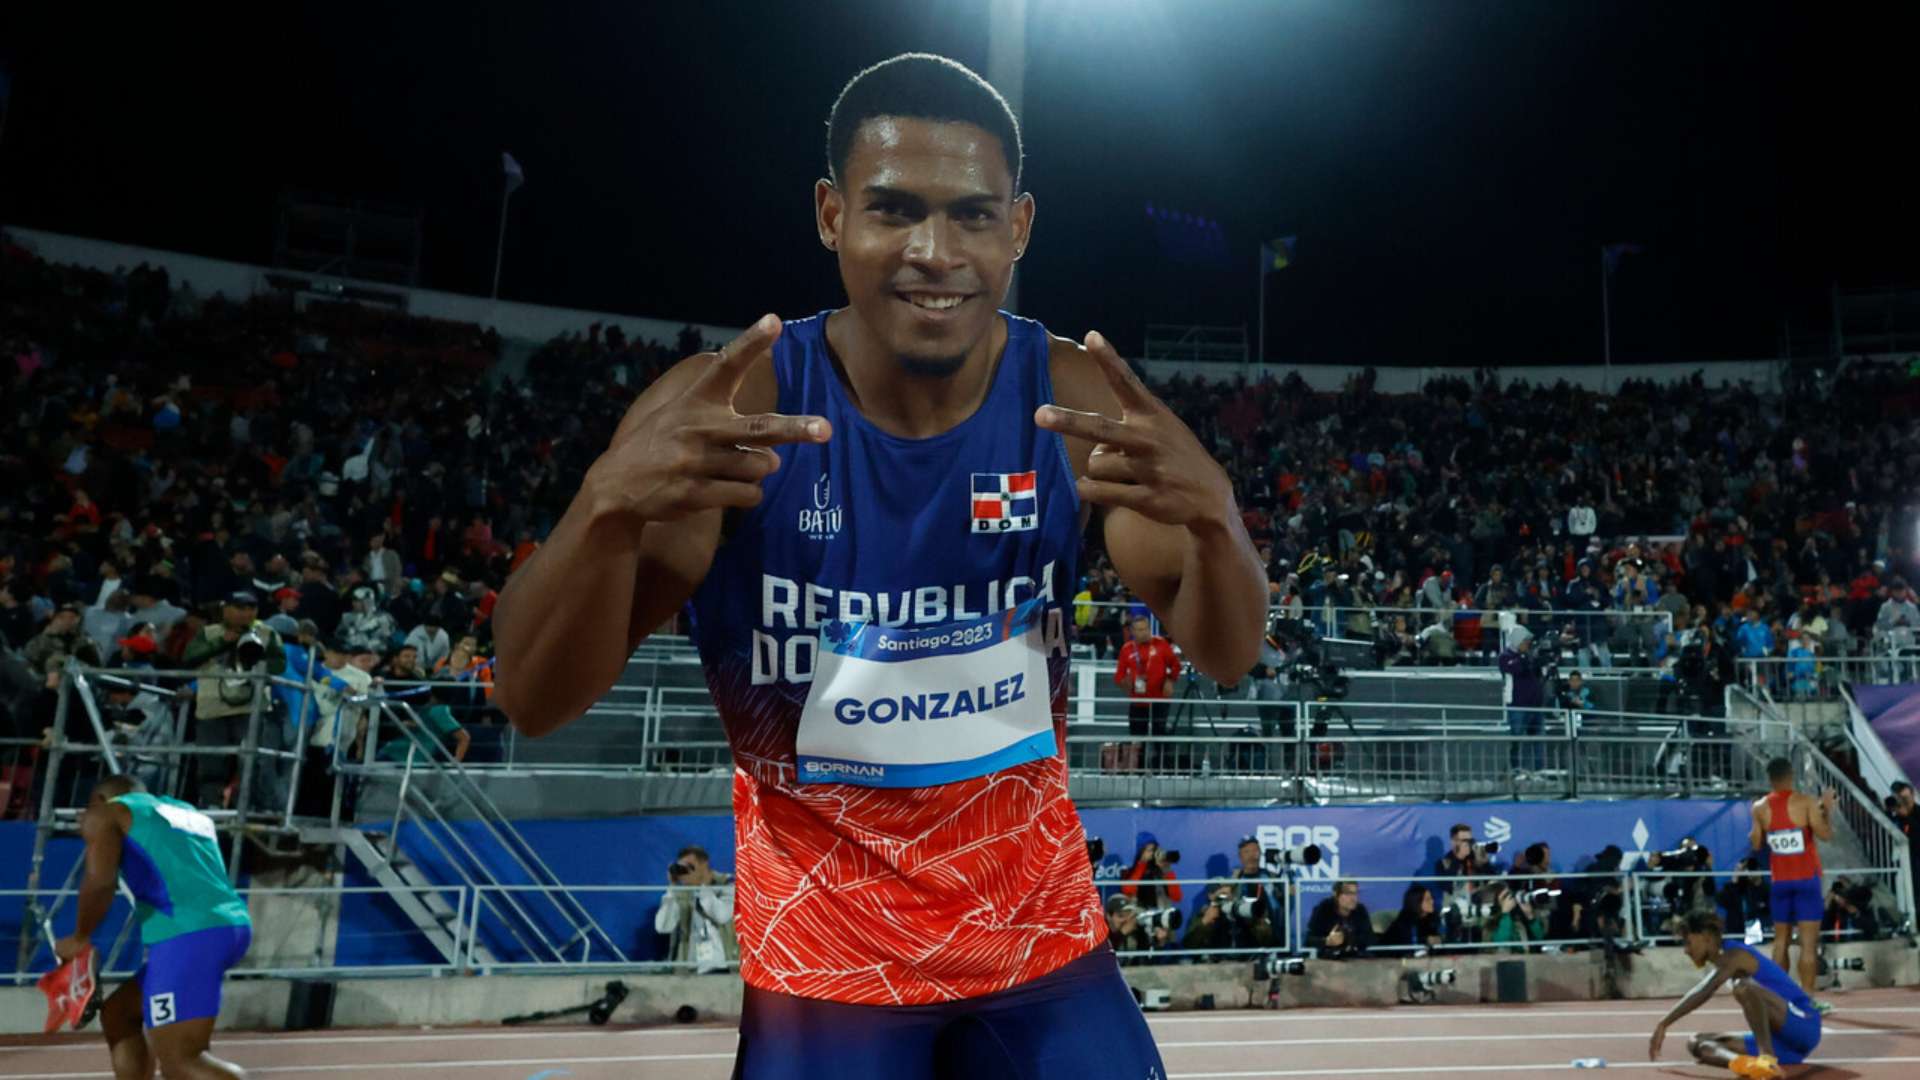 Dominicano José González conquista el oro en los 100 metros